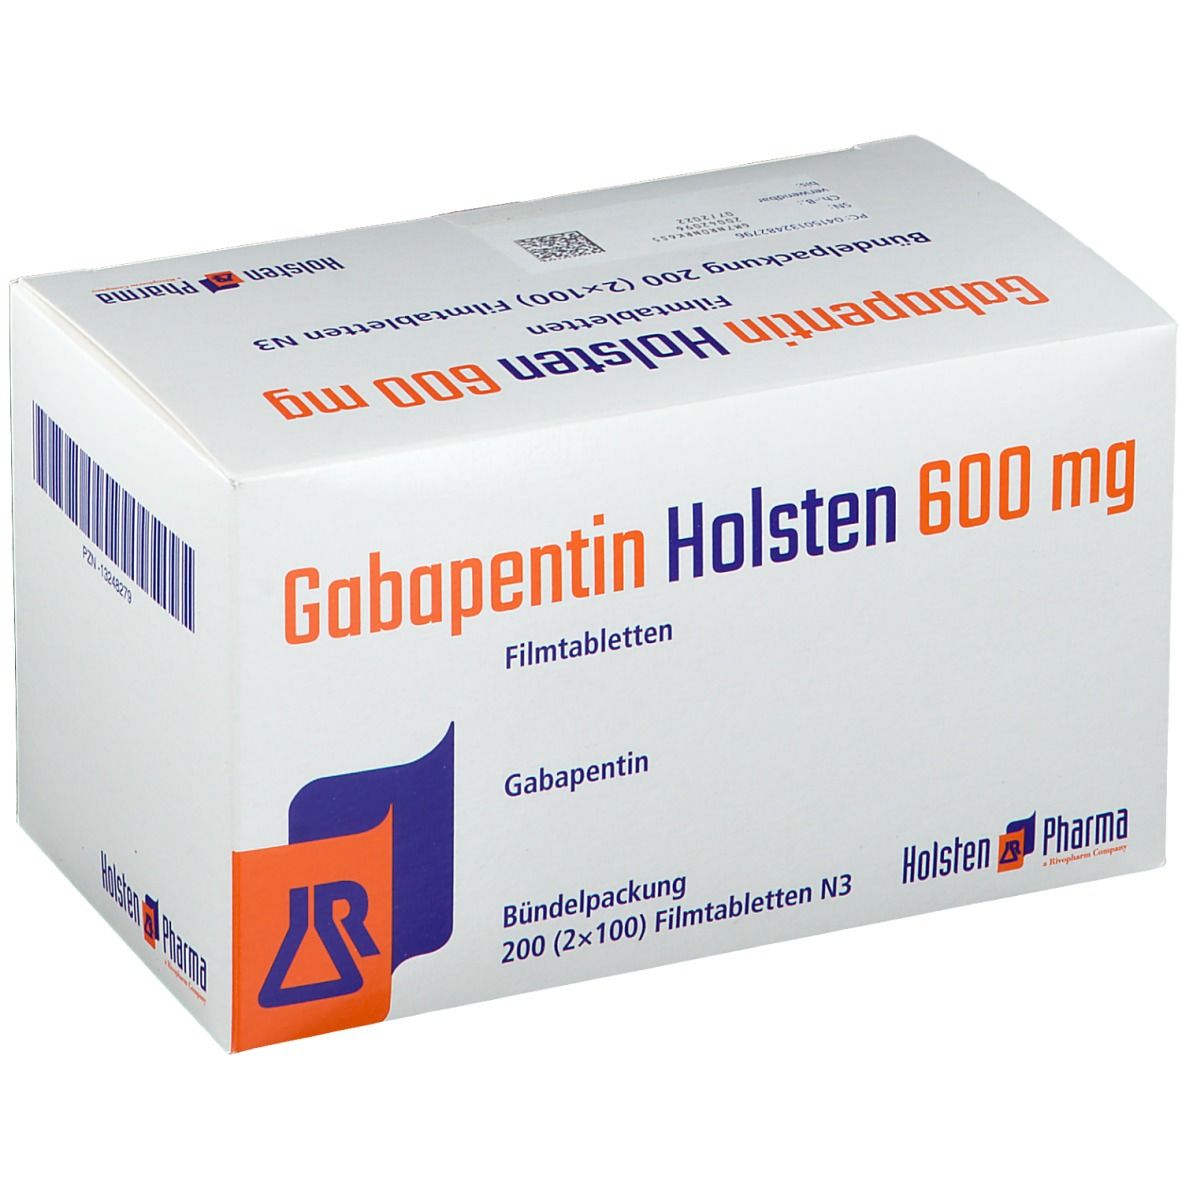 Gabapentin Holsten 600 mg